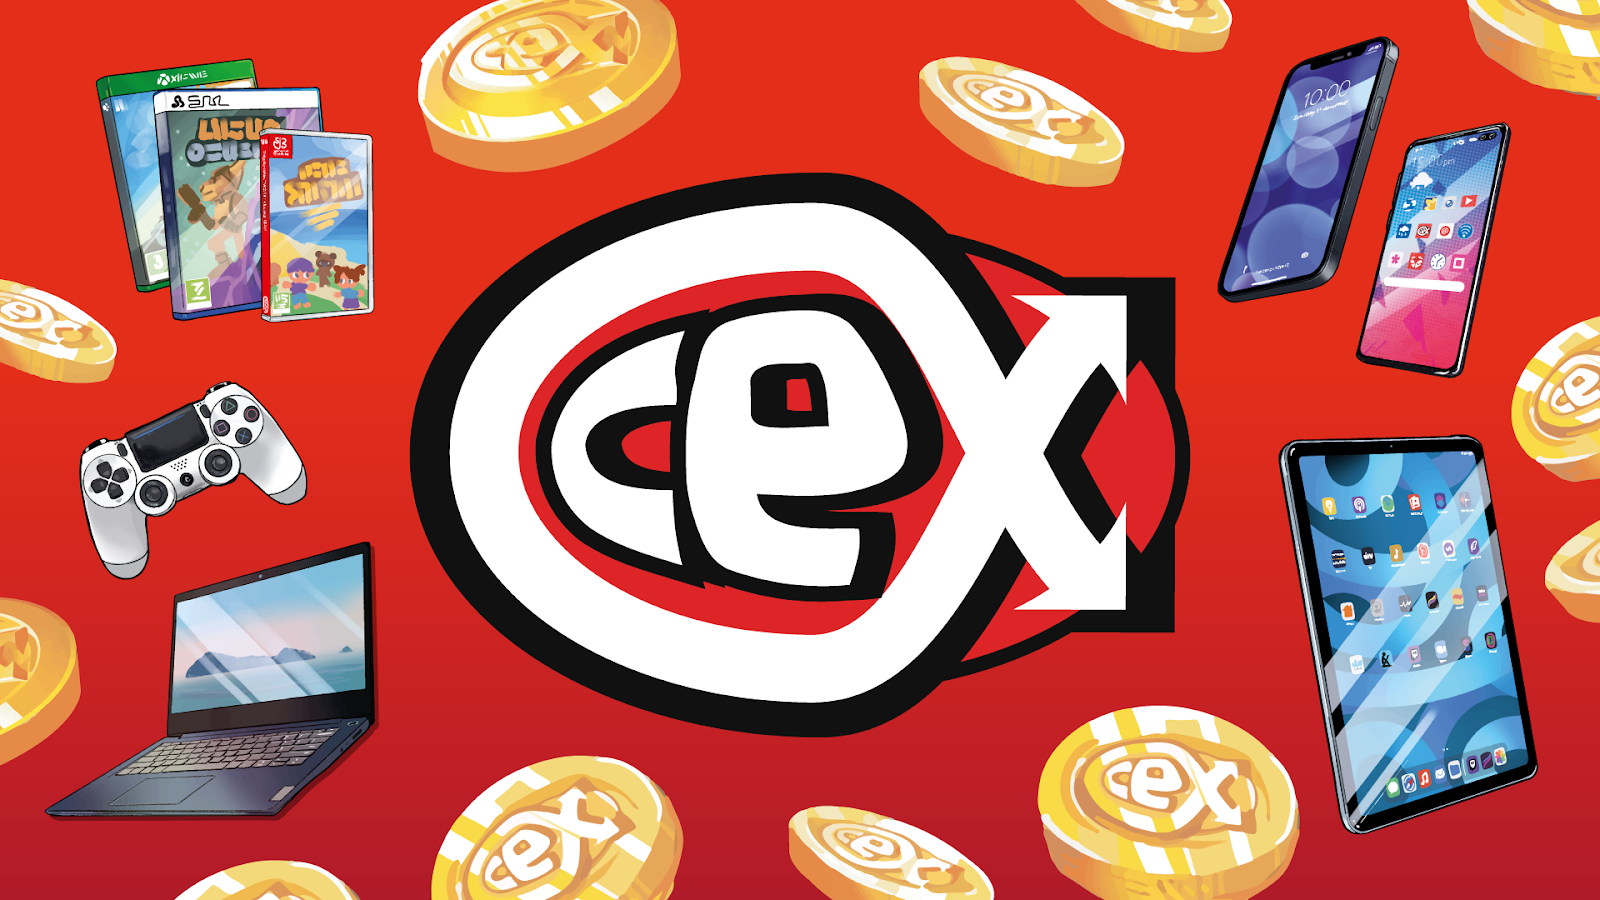 CeX (MX) : Acerca de CeX